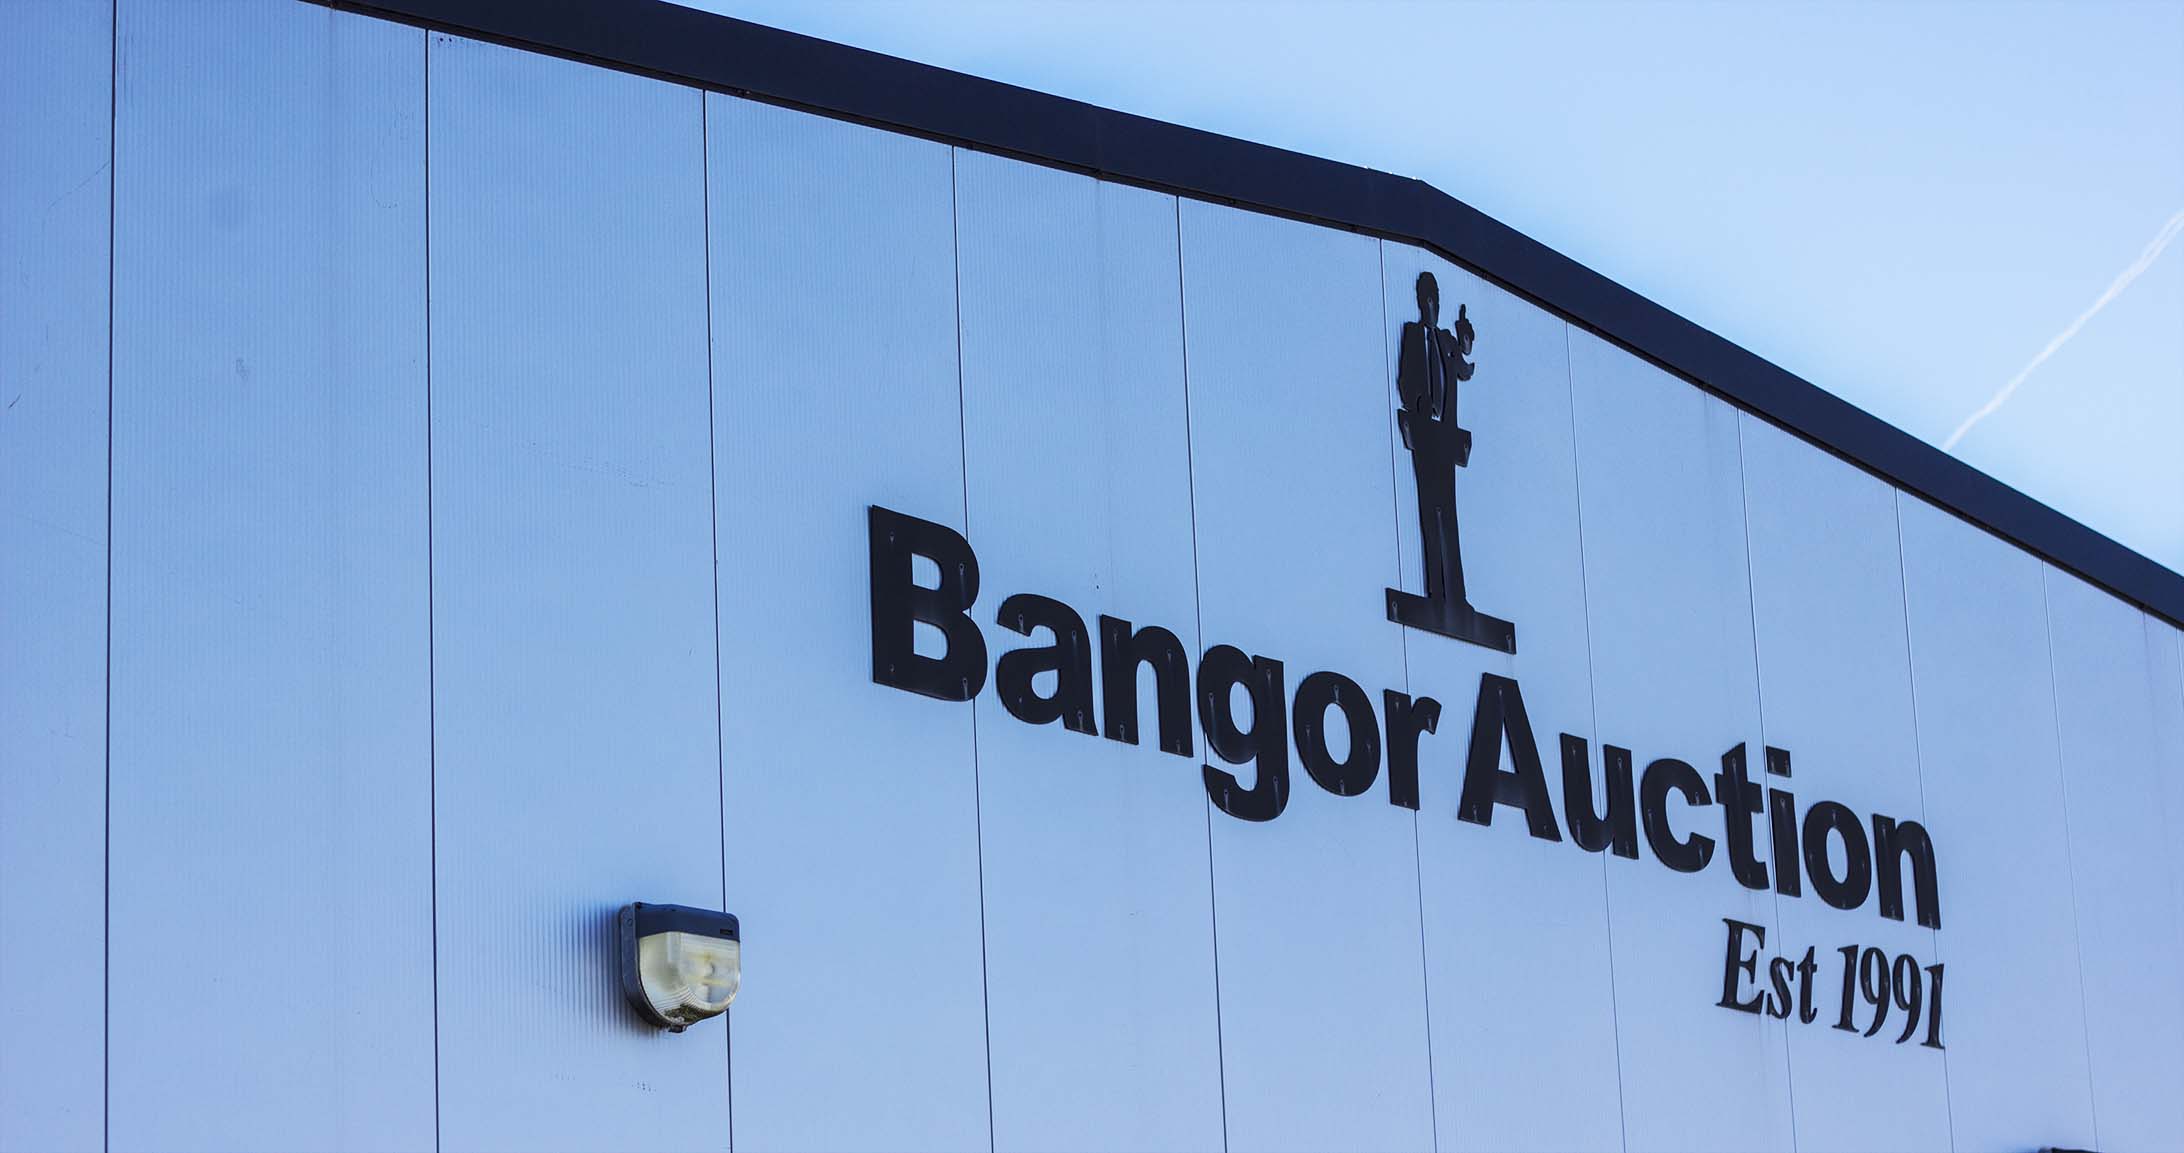 Bangor Auctions Ltd. Services